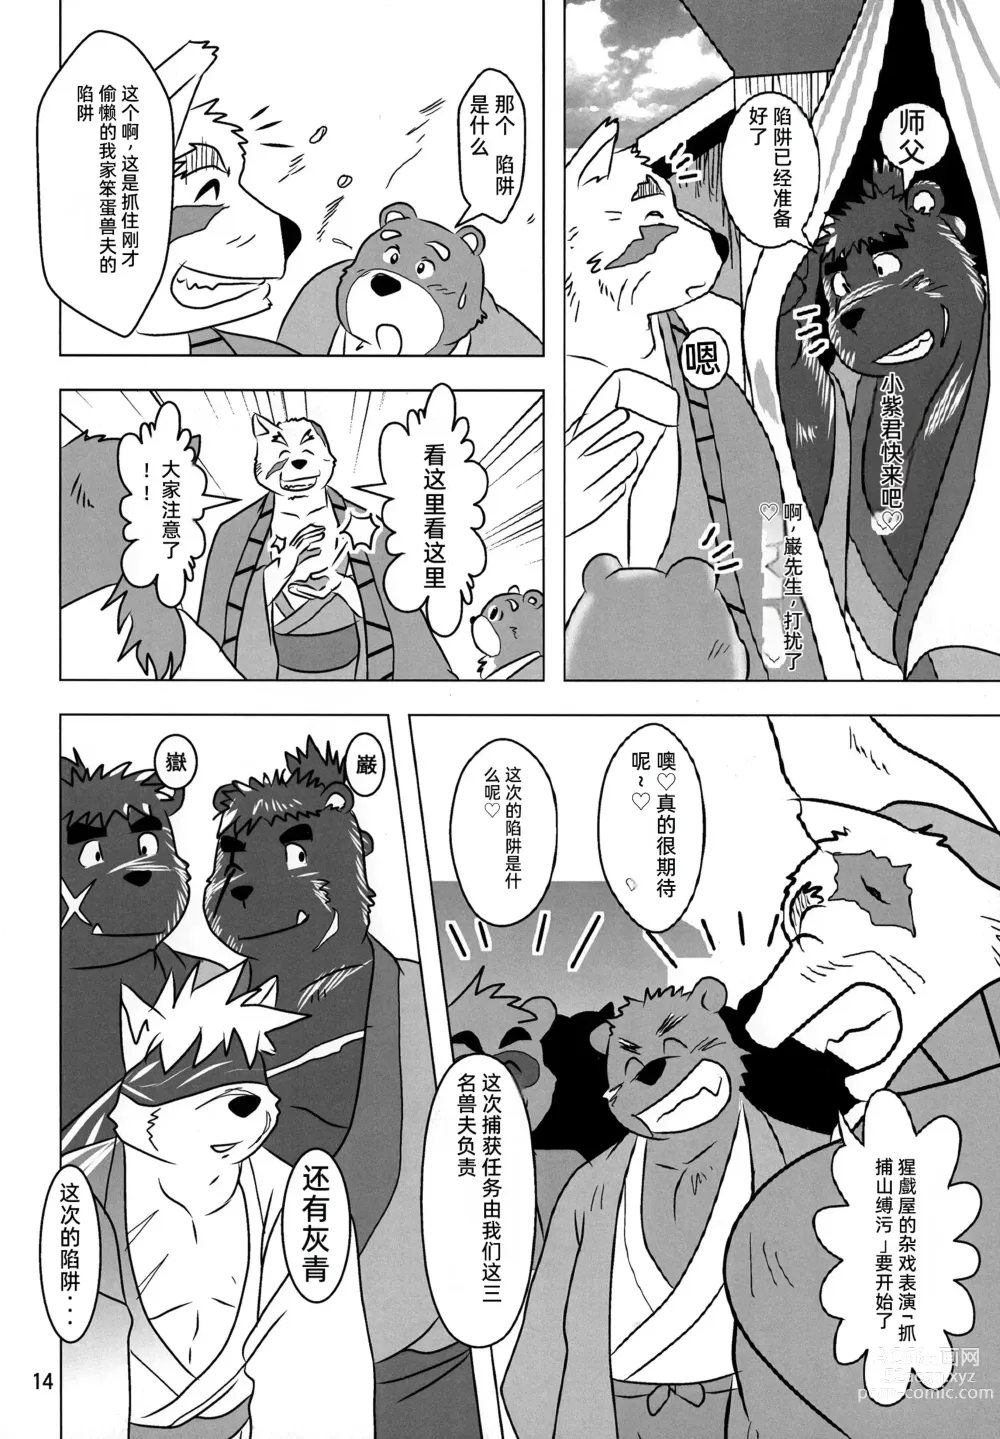 Page 13 of doujinshi Kemono no Roukaku - Utage